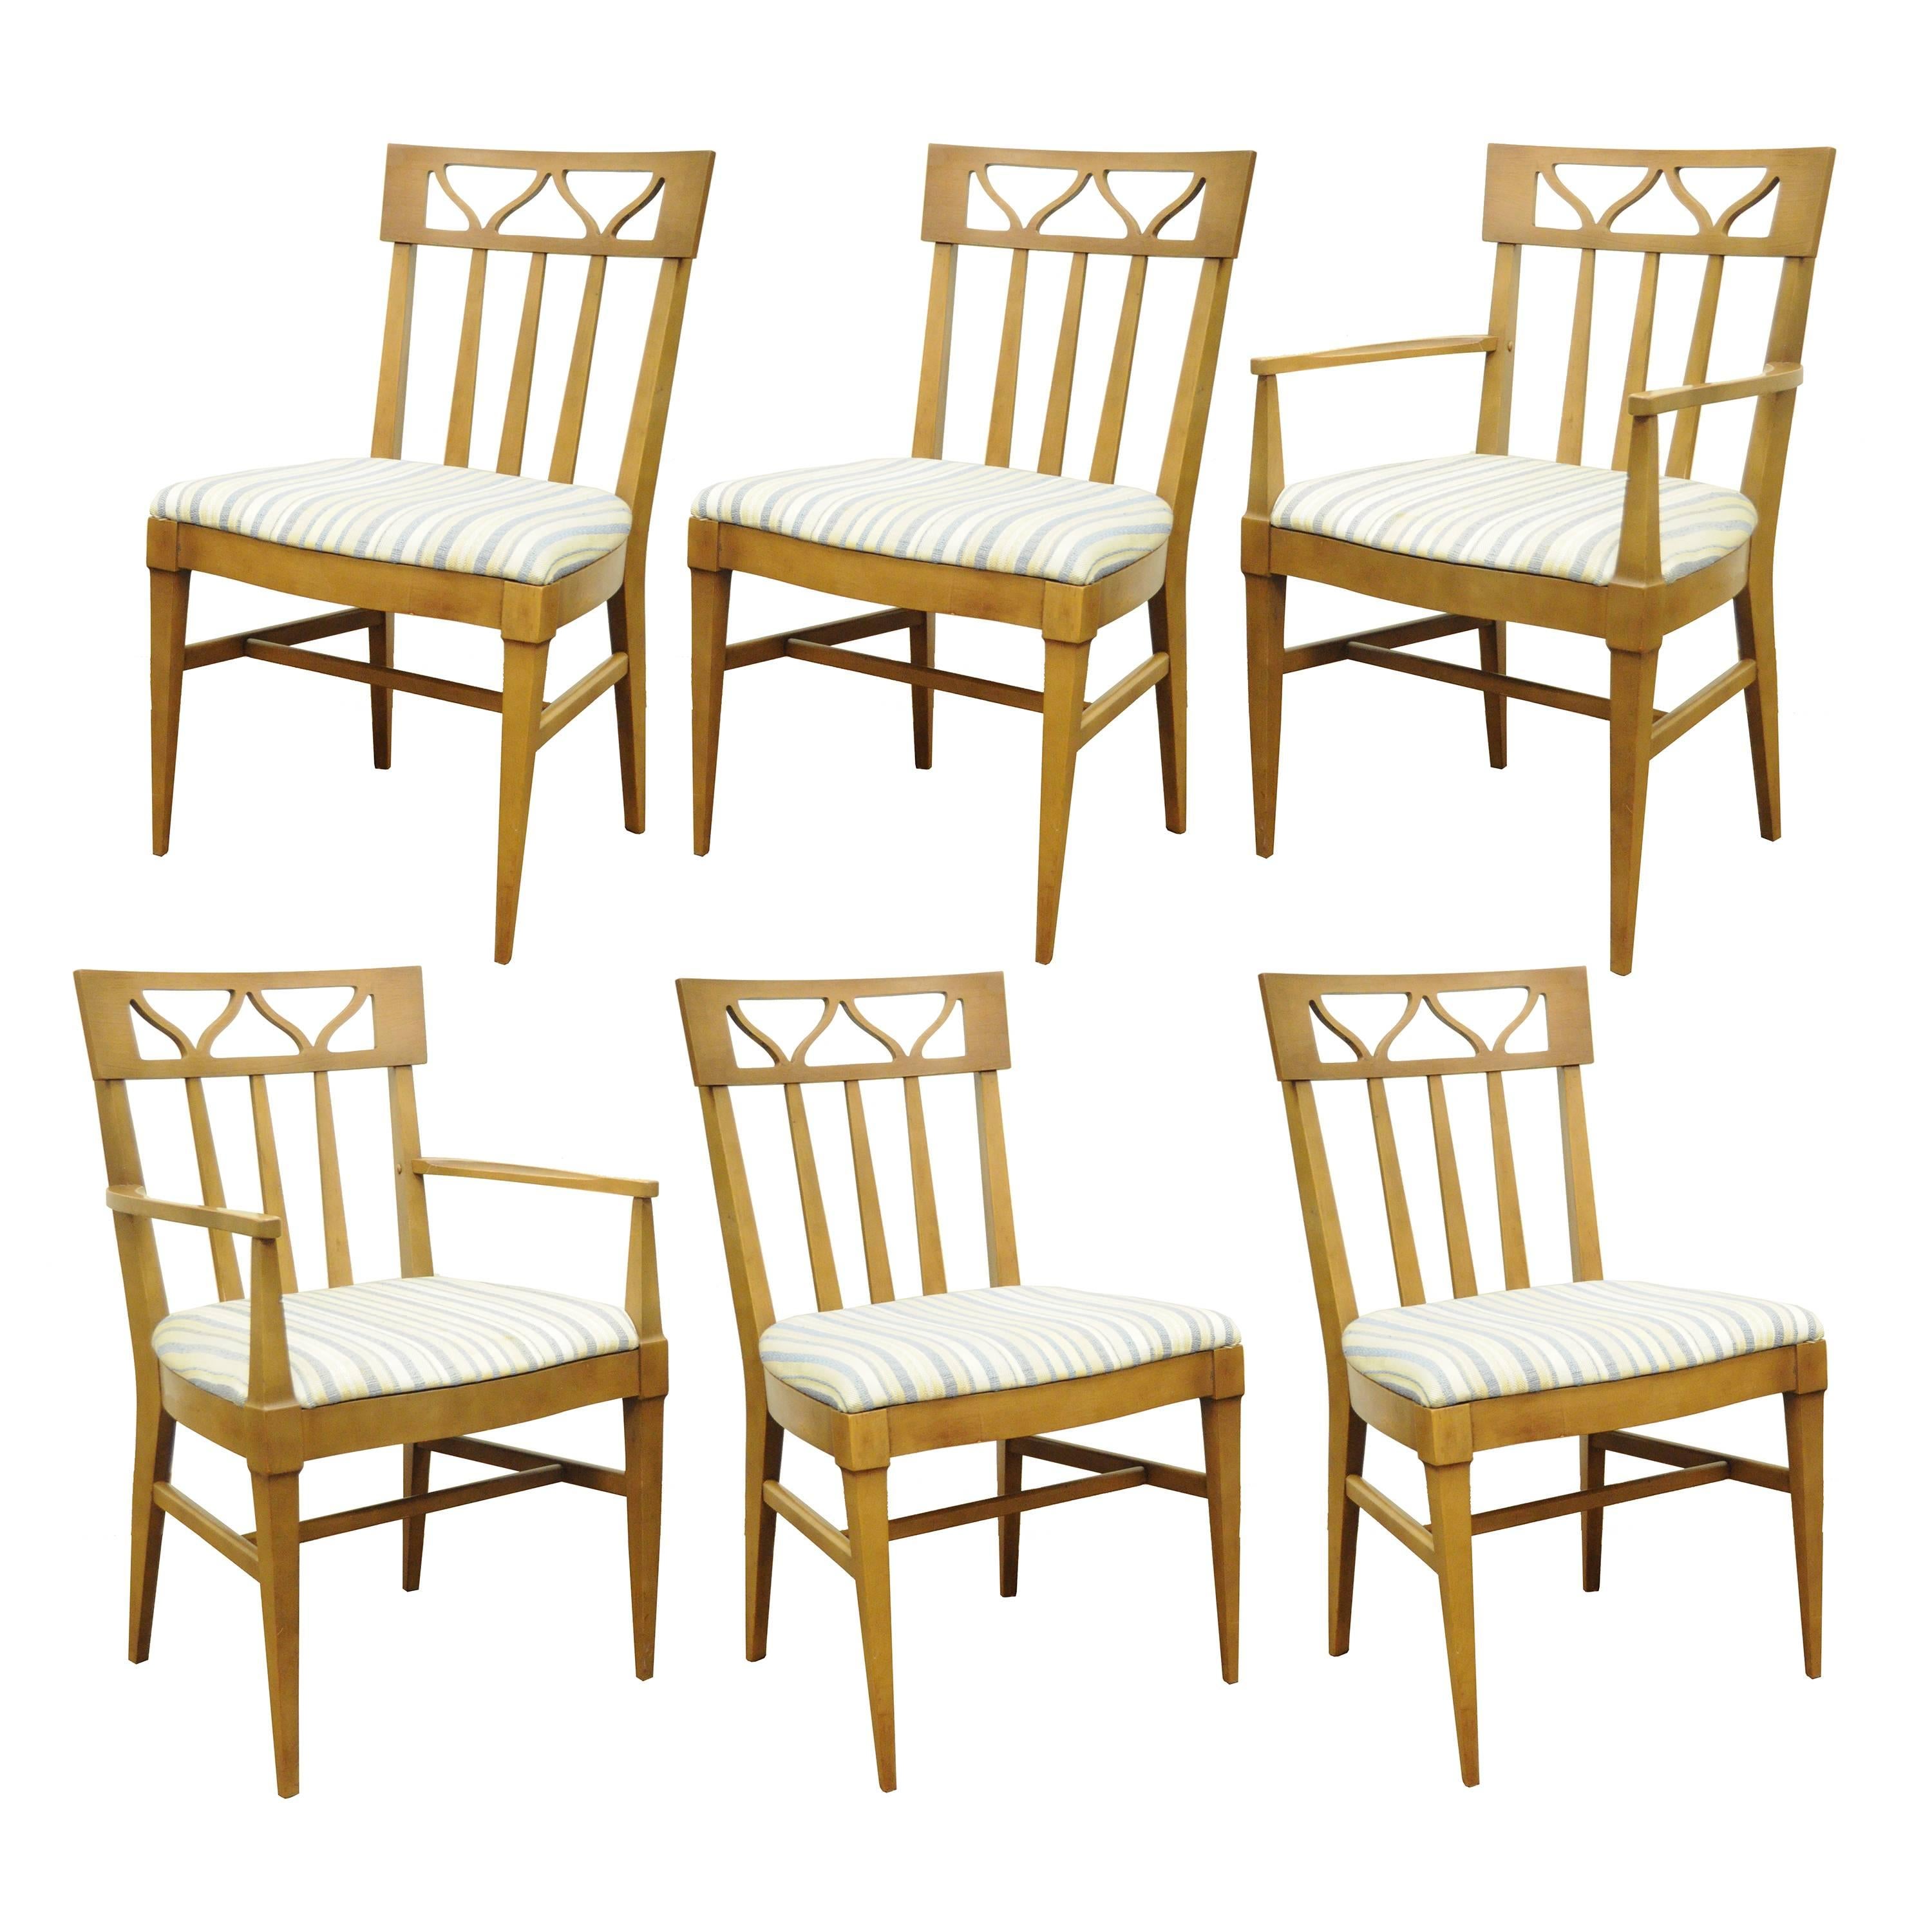 Vintage Mid-Century Modern zehnteiliges Esszimmer-Set aus Walnussholz von Broyhill Premier Invitation Grouping. Das Set besteht aus sechs Esszimmerstühlen (vier Beistellstühle, zwei Sessel), einem Geschirrschrank, einer Anrichte, einem Server und